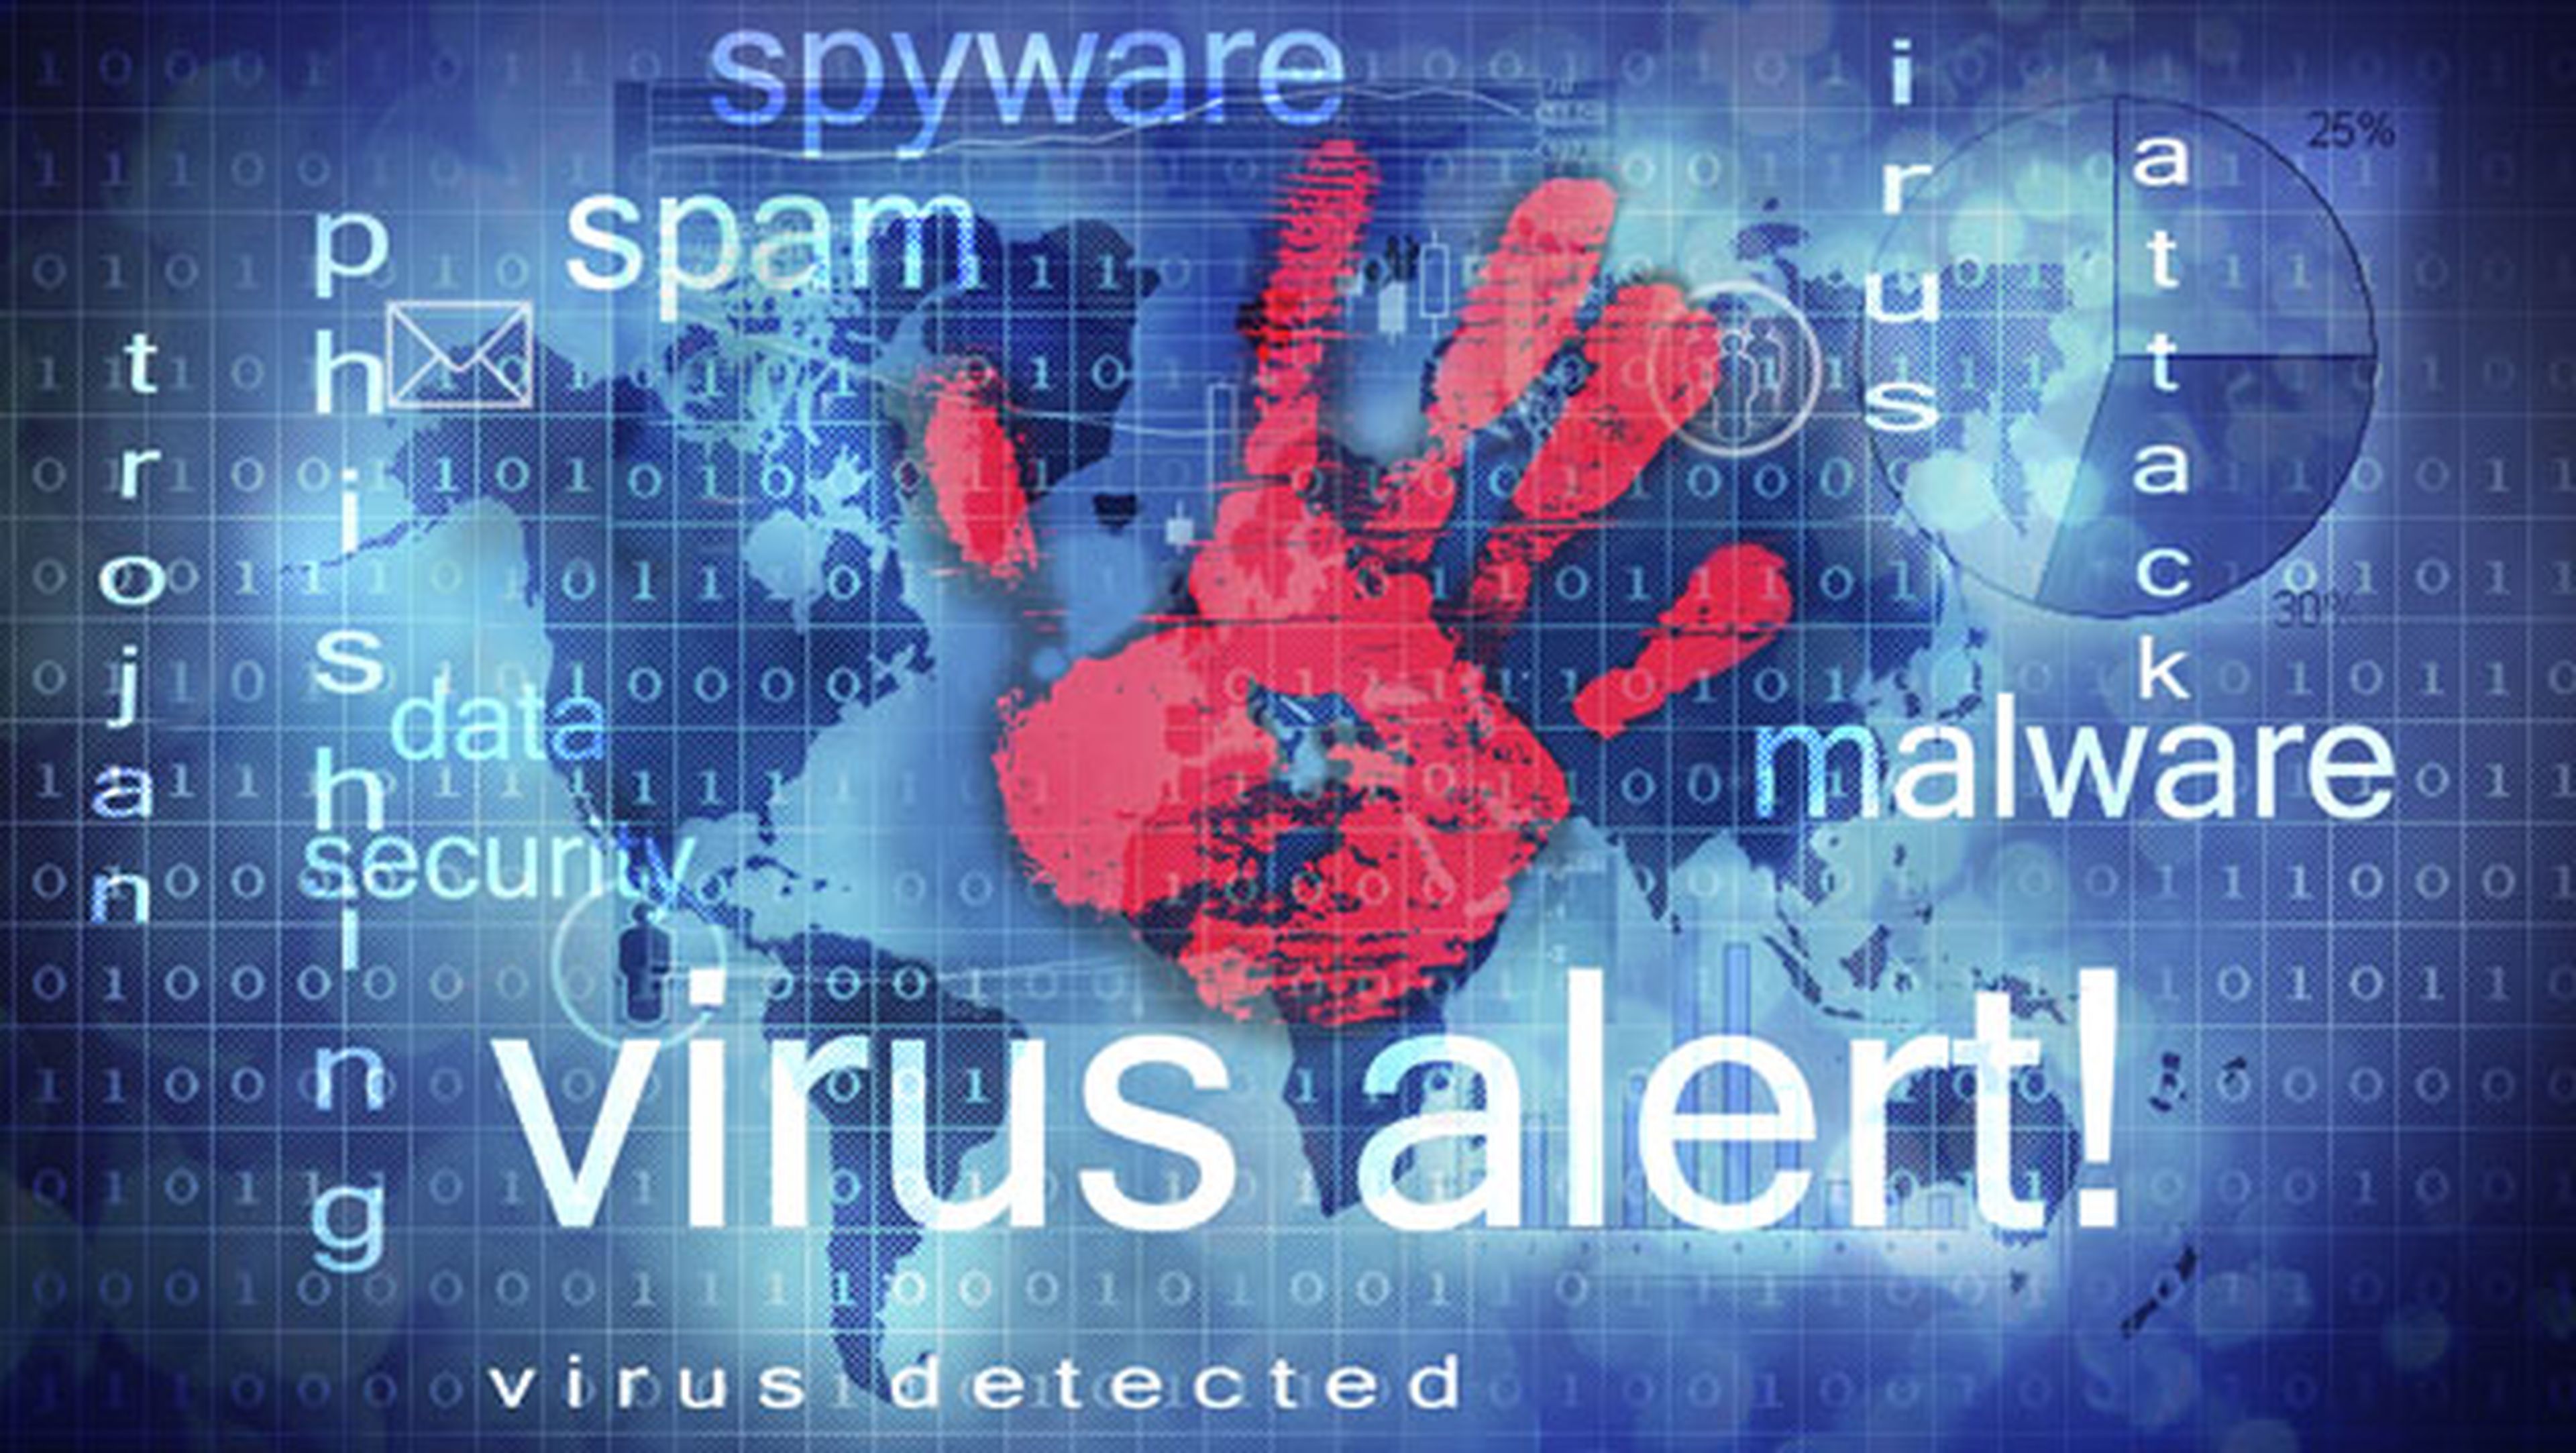 Policía advierte virus nombre roba datos bancarios